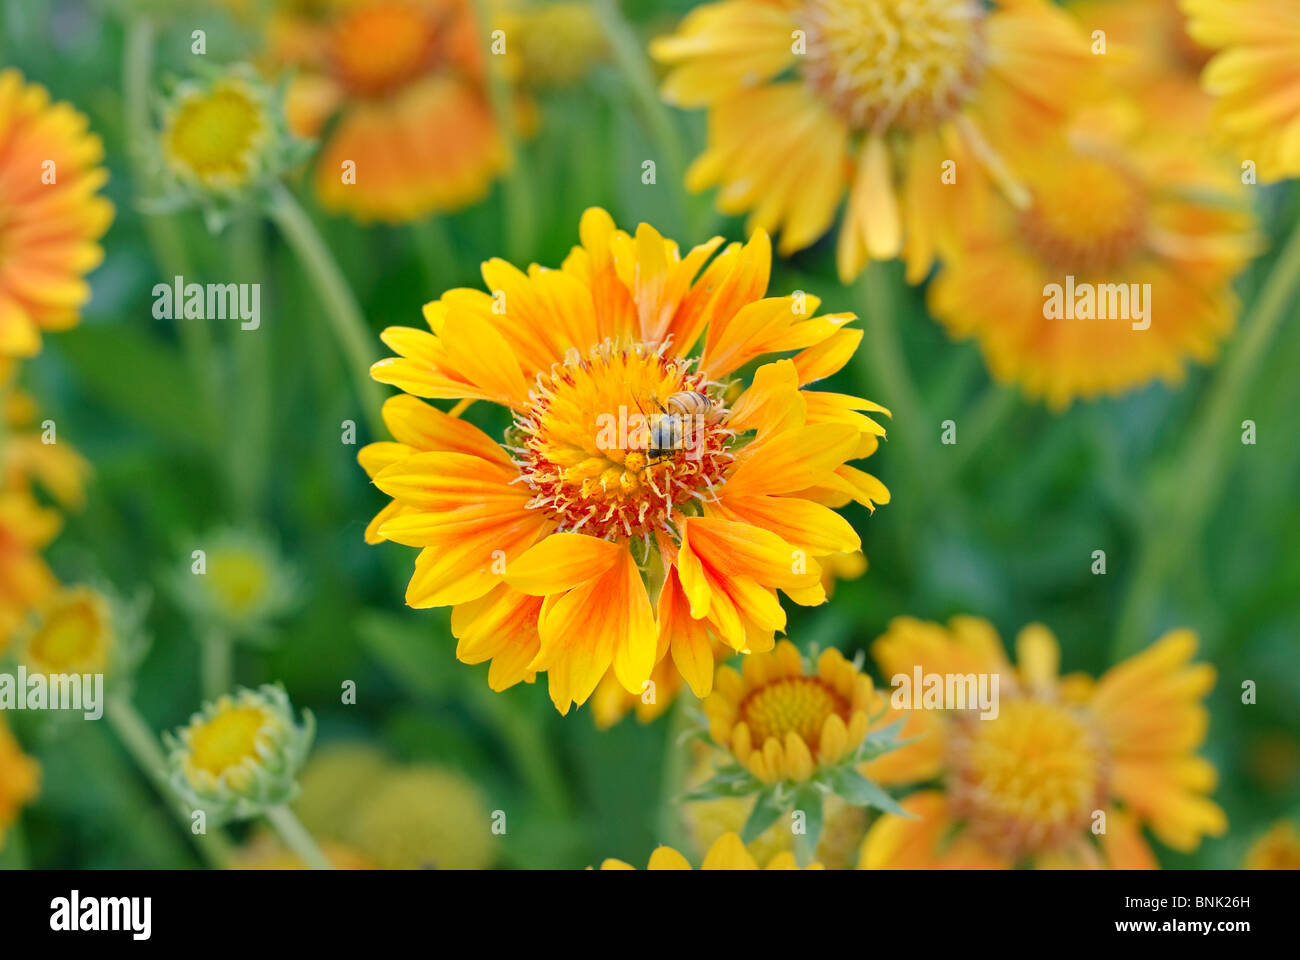 Leuchtend orangefarbene Blume mit einer Biene Fütterung und bestäuben sie. Stockfoto